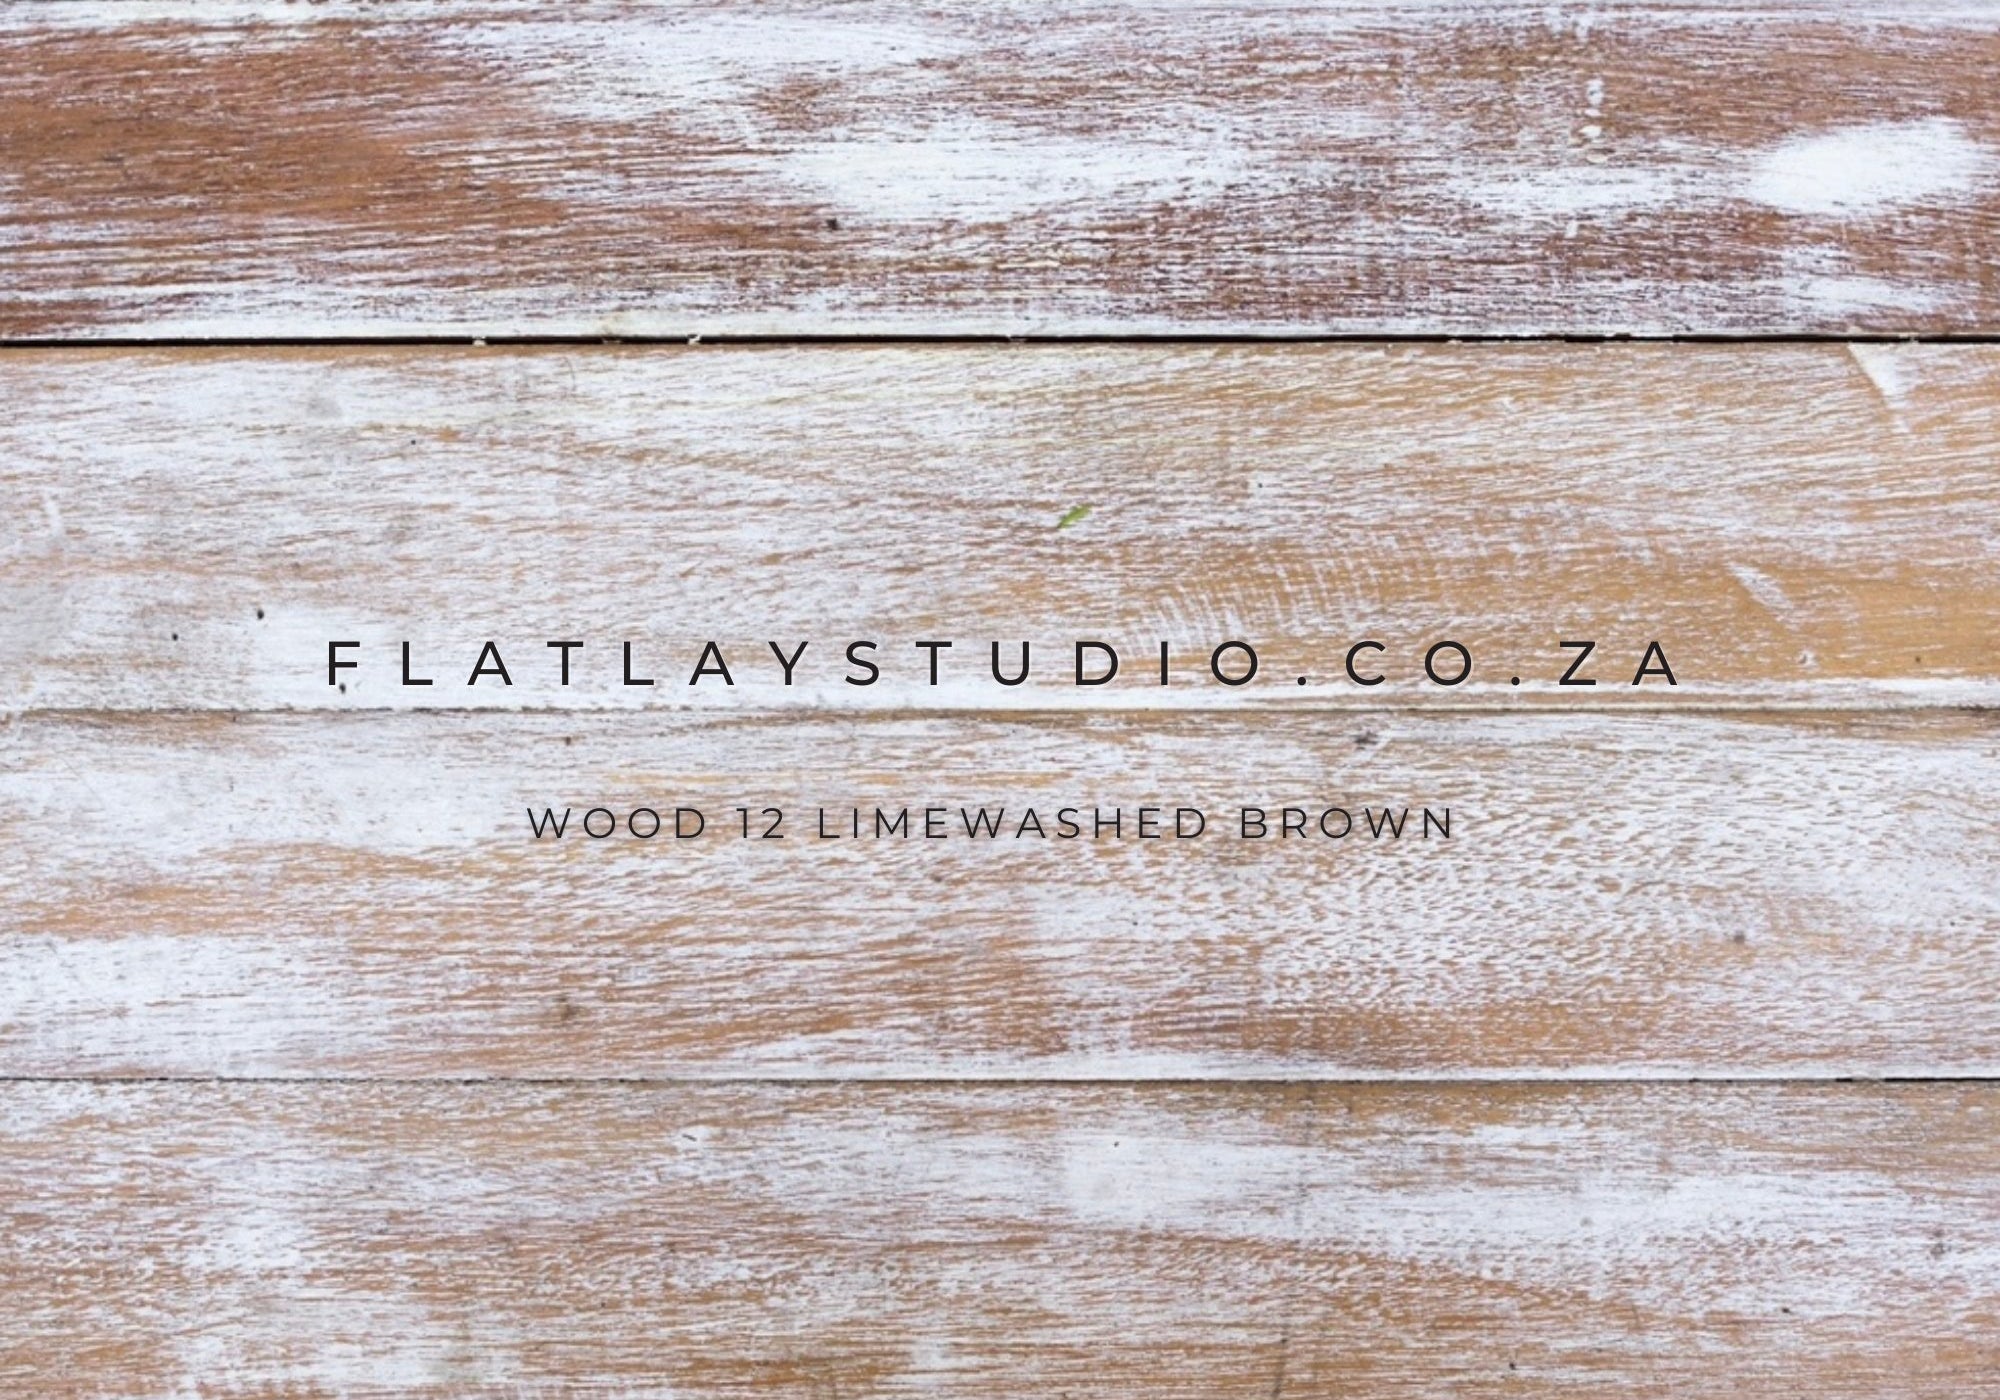 Wood 12 Limewashed Brown - FlatlayStudio Flatlay Styling Board